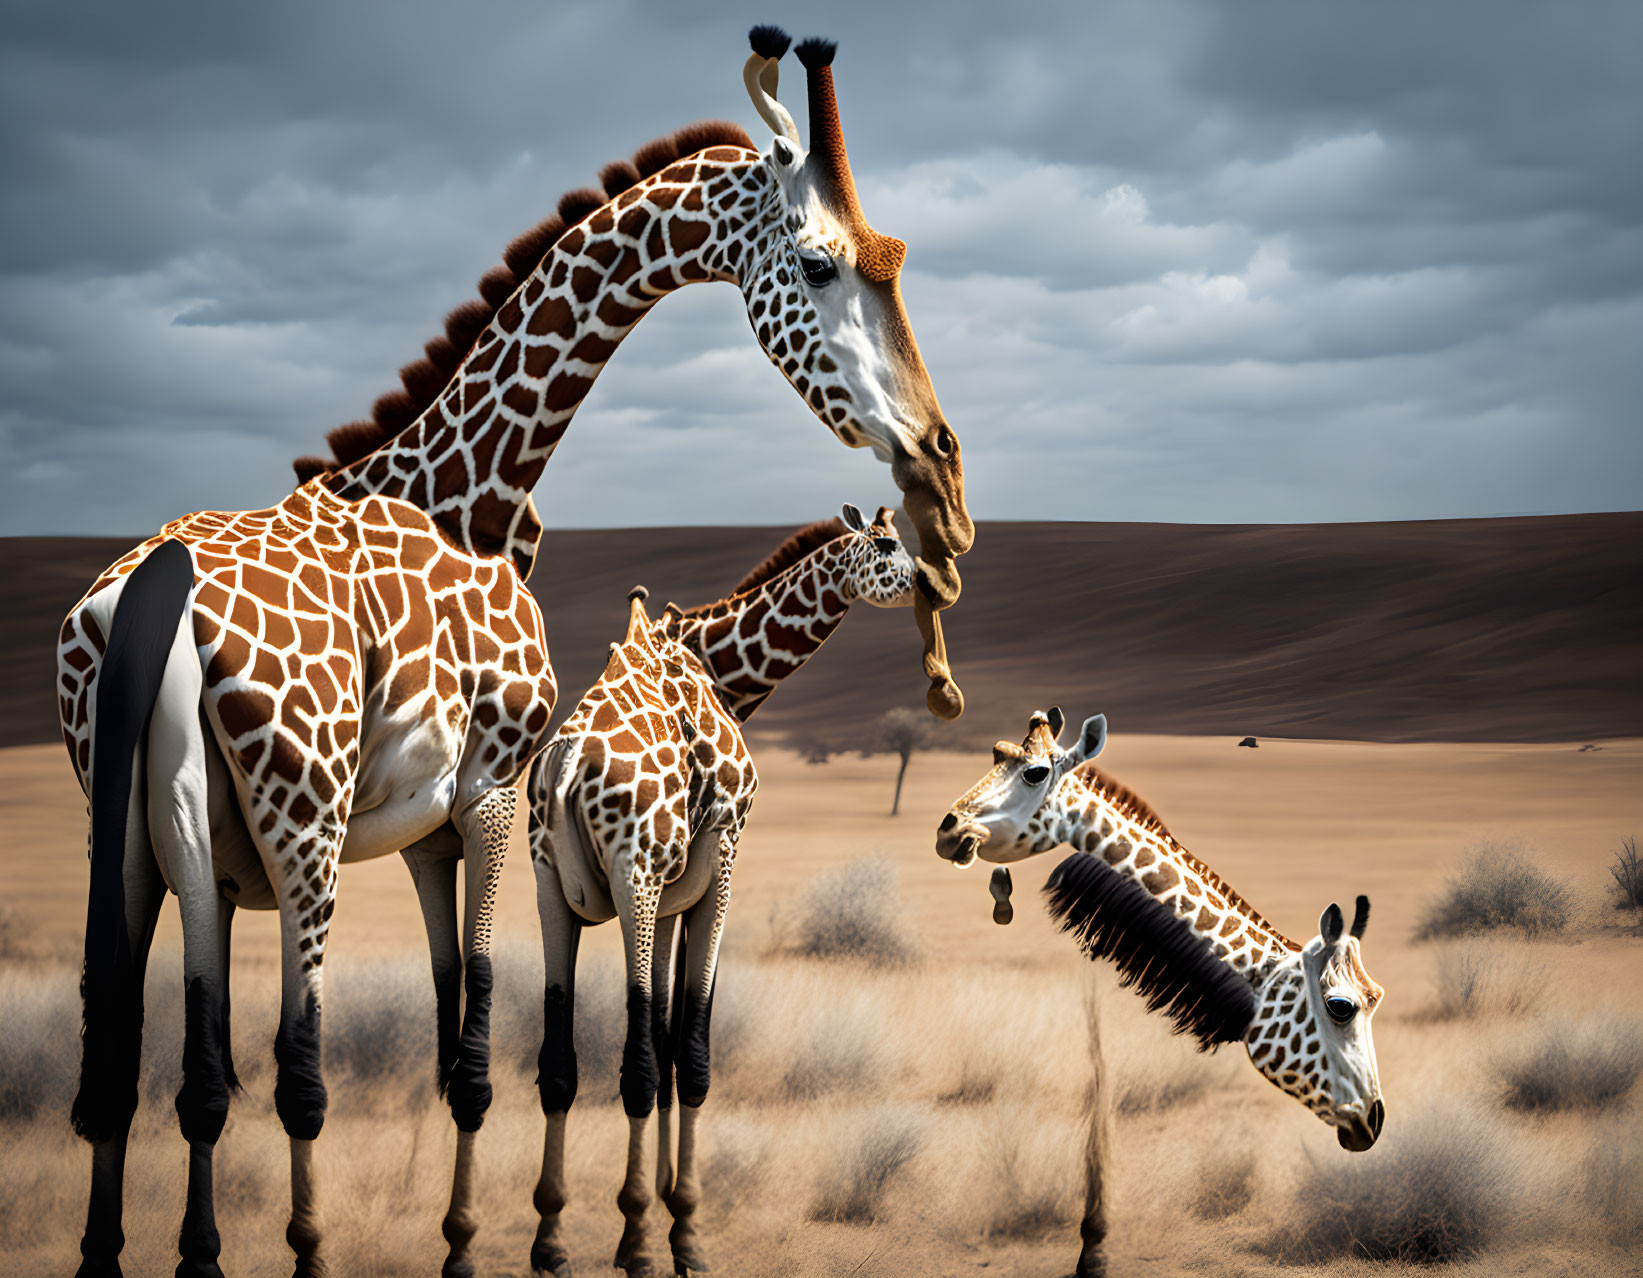 Three Giraffes in Desert Under Dark Clouds